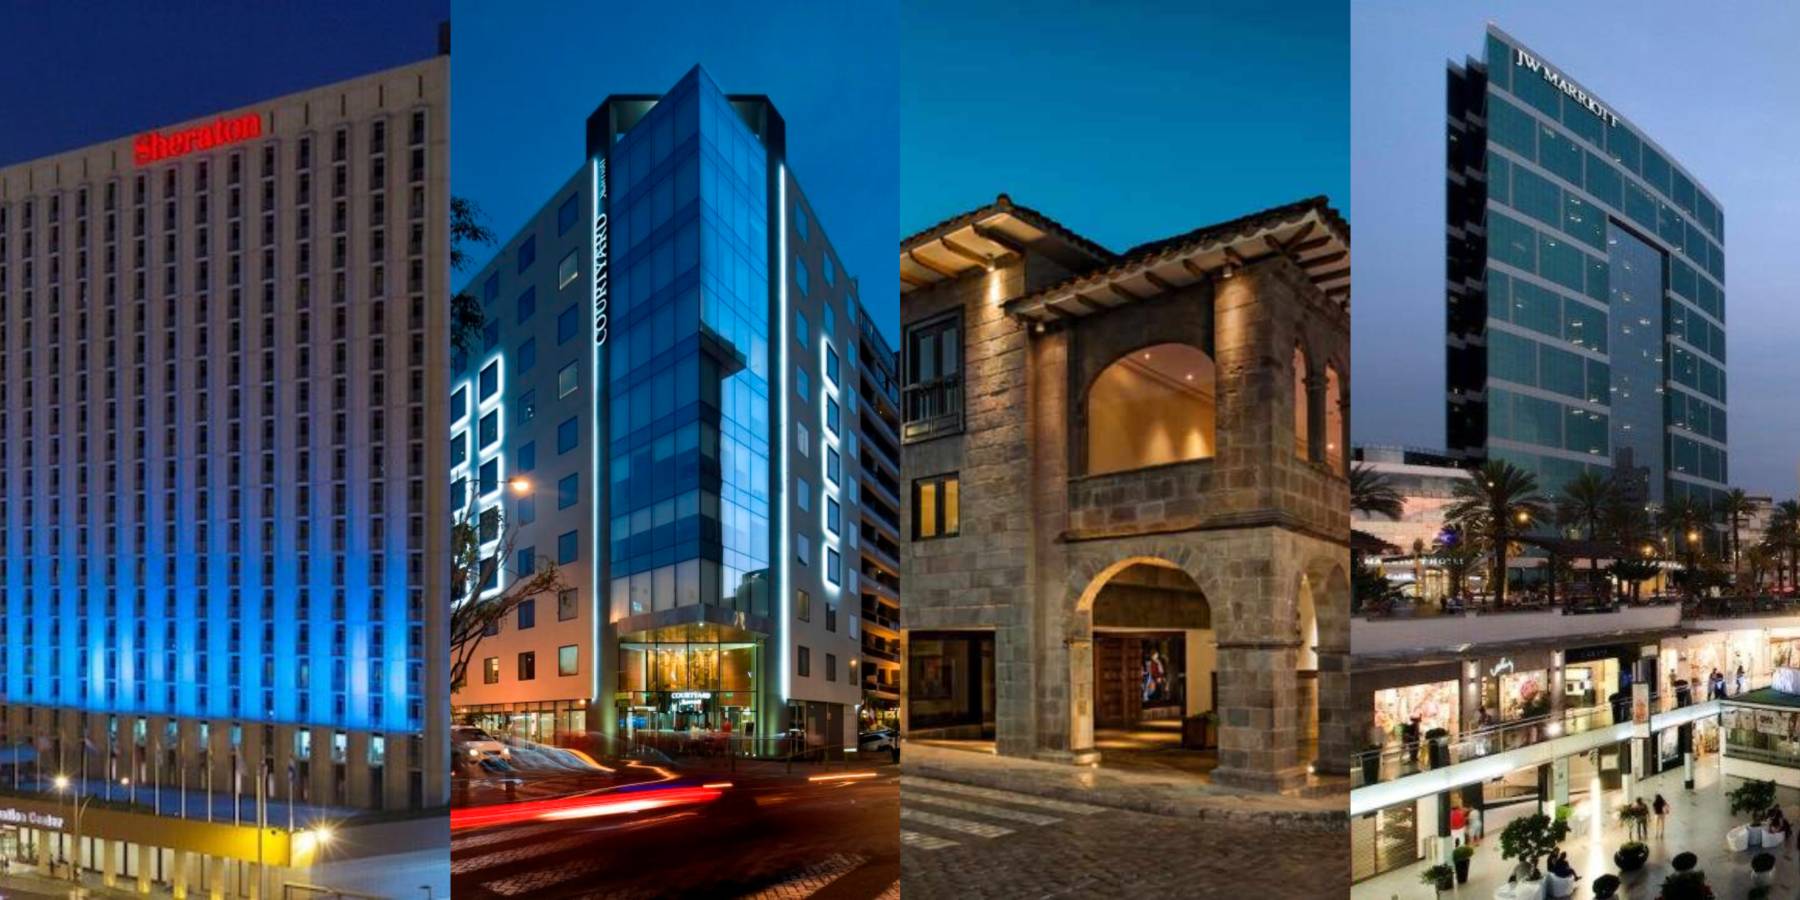 Hoteles Marriott International presentan sus servicios para corporativos